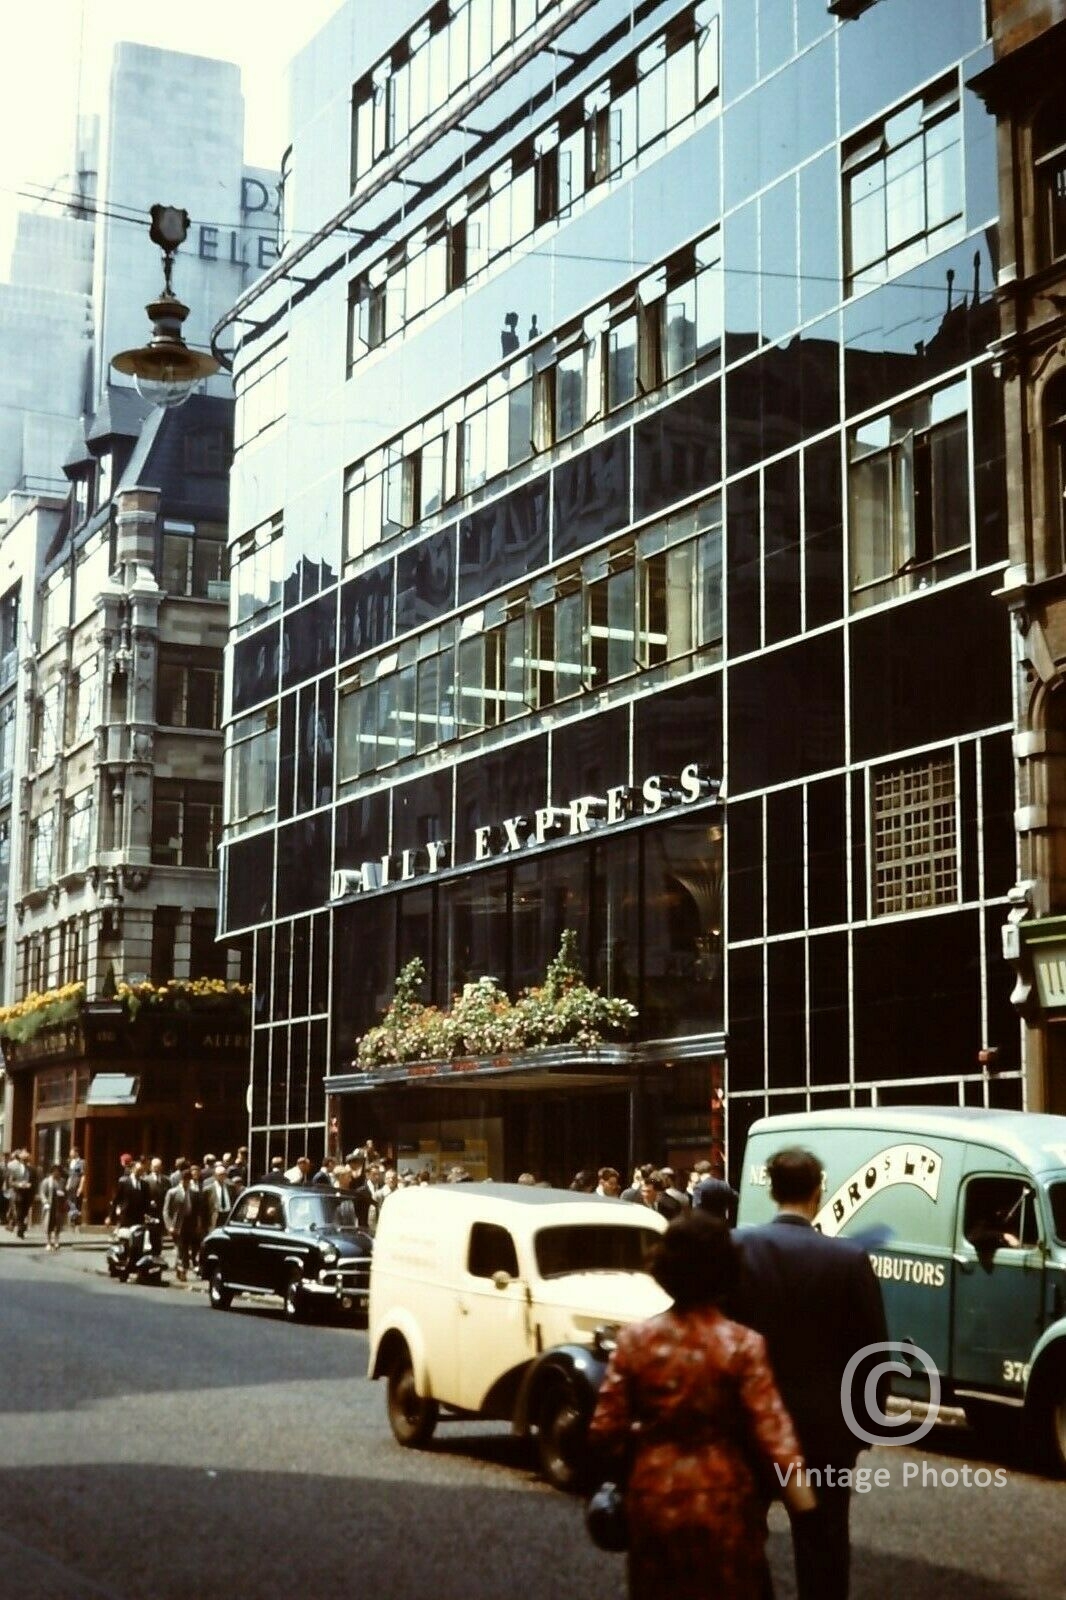 1960s London Fleet Street Daily Express Office